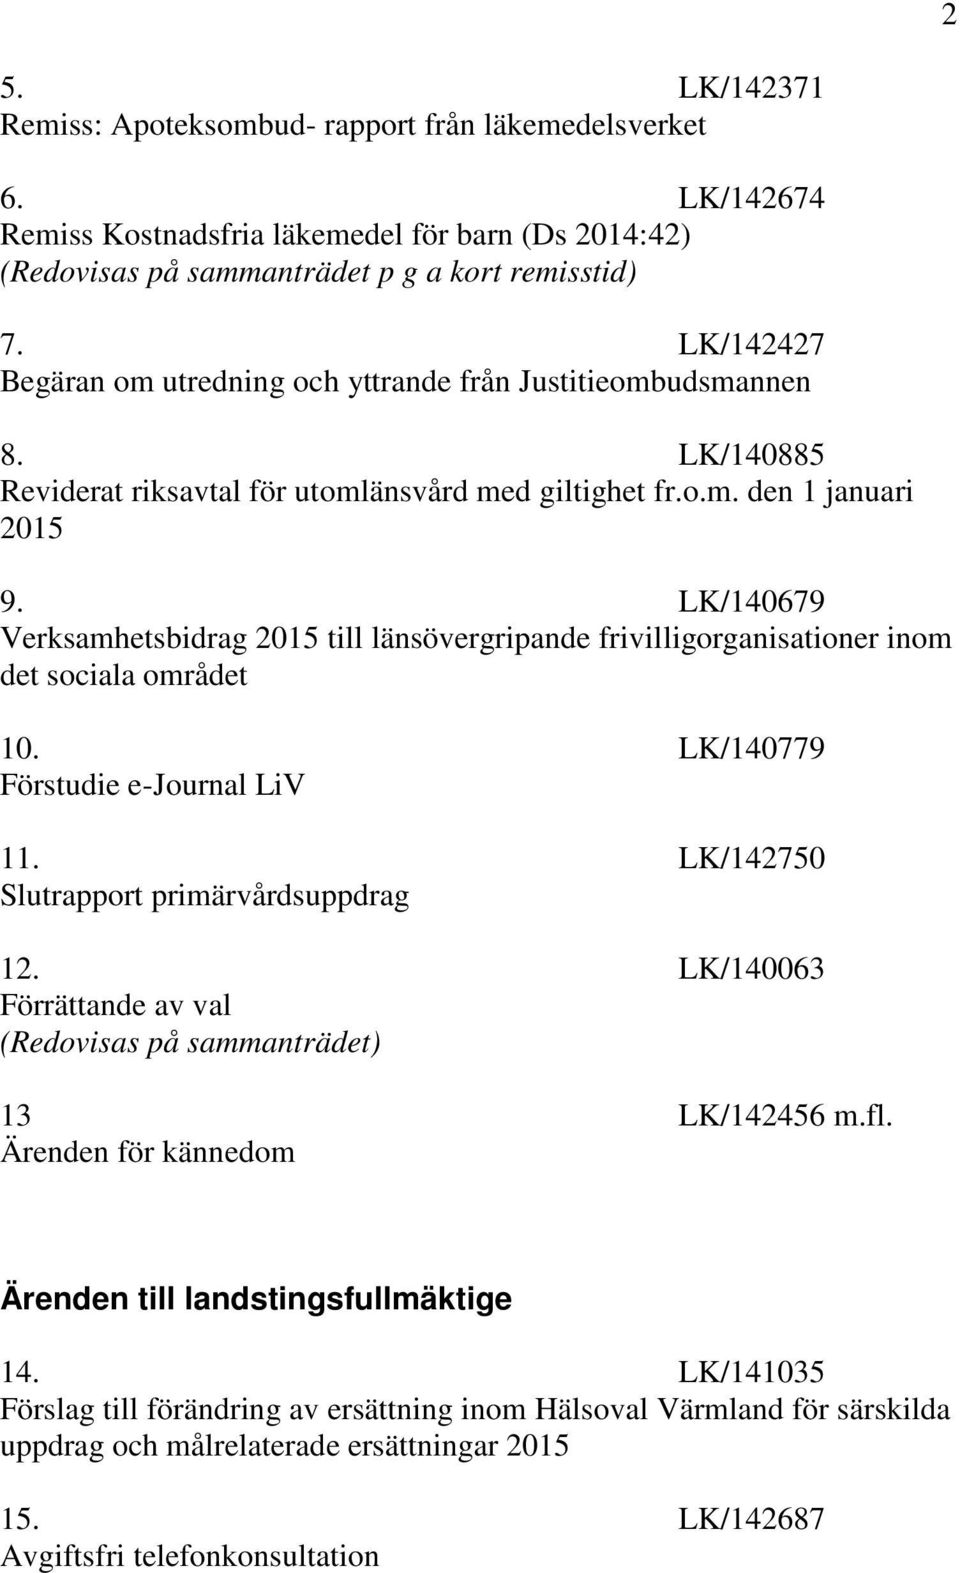 LK/140679 Verksamhetsbidrag 2015 till länsövergripande frivilligorganisationer inom det sociala området 10. LK/140779 Förstudie e-journal LiV 11. LK/142750 Slutrapport primärvårdsuppdrag 12.